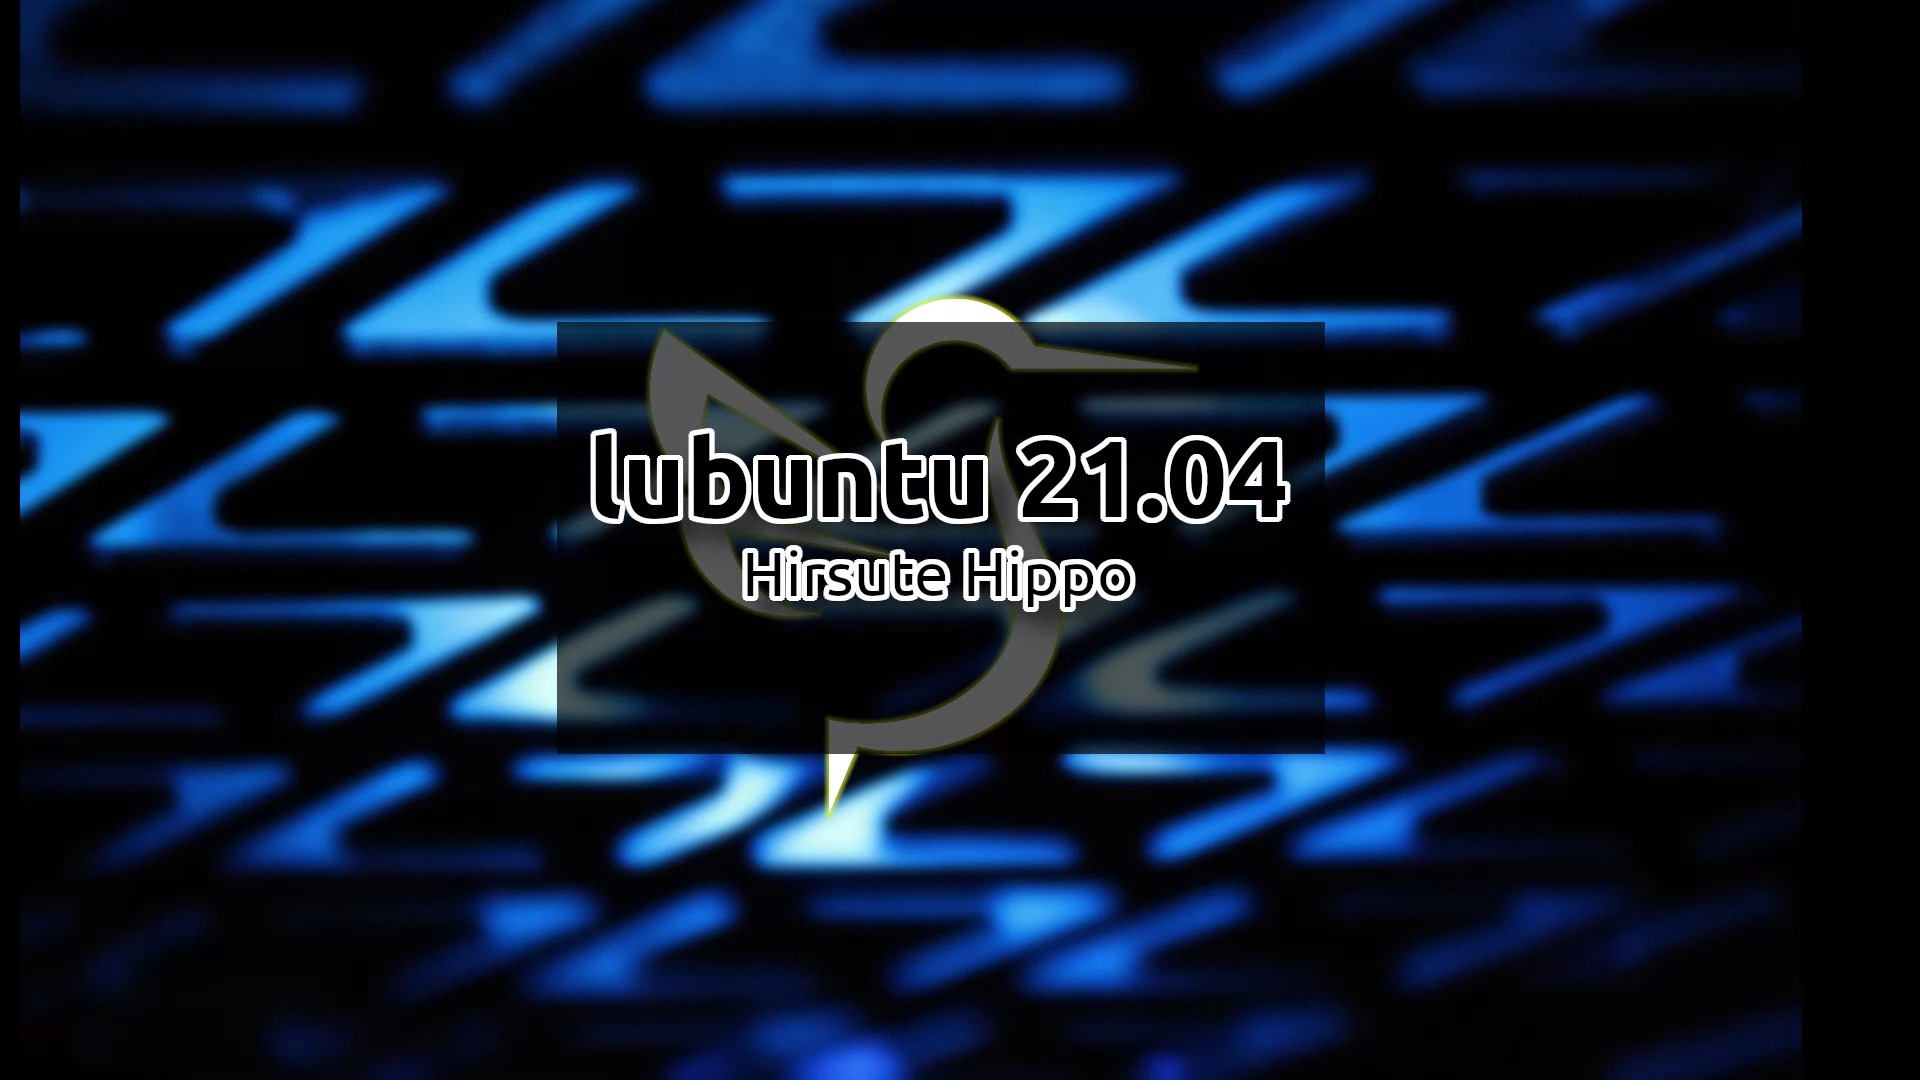 Lubuntu 21.04 Preview